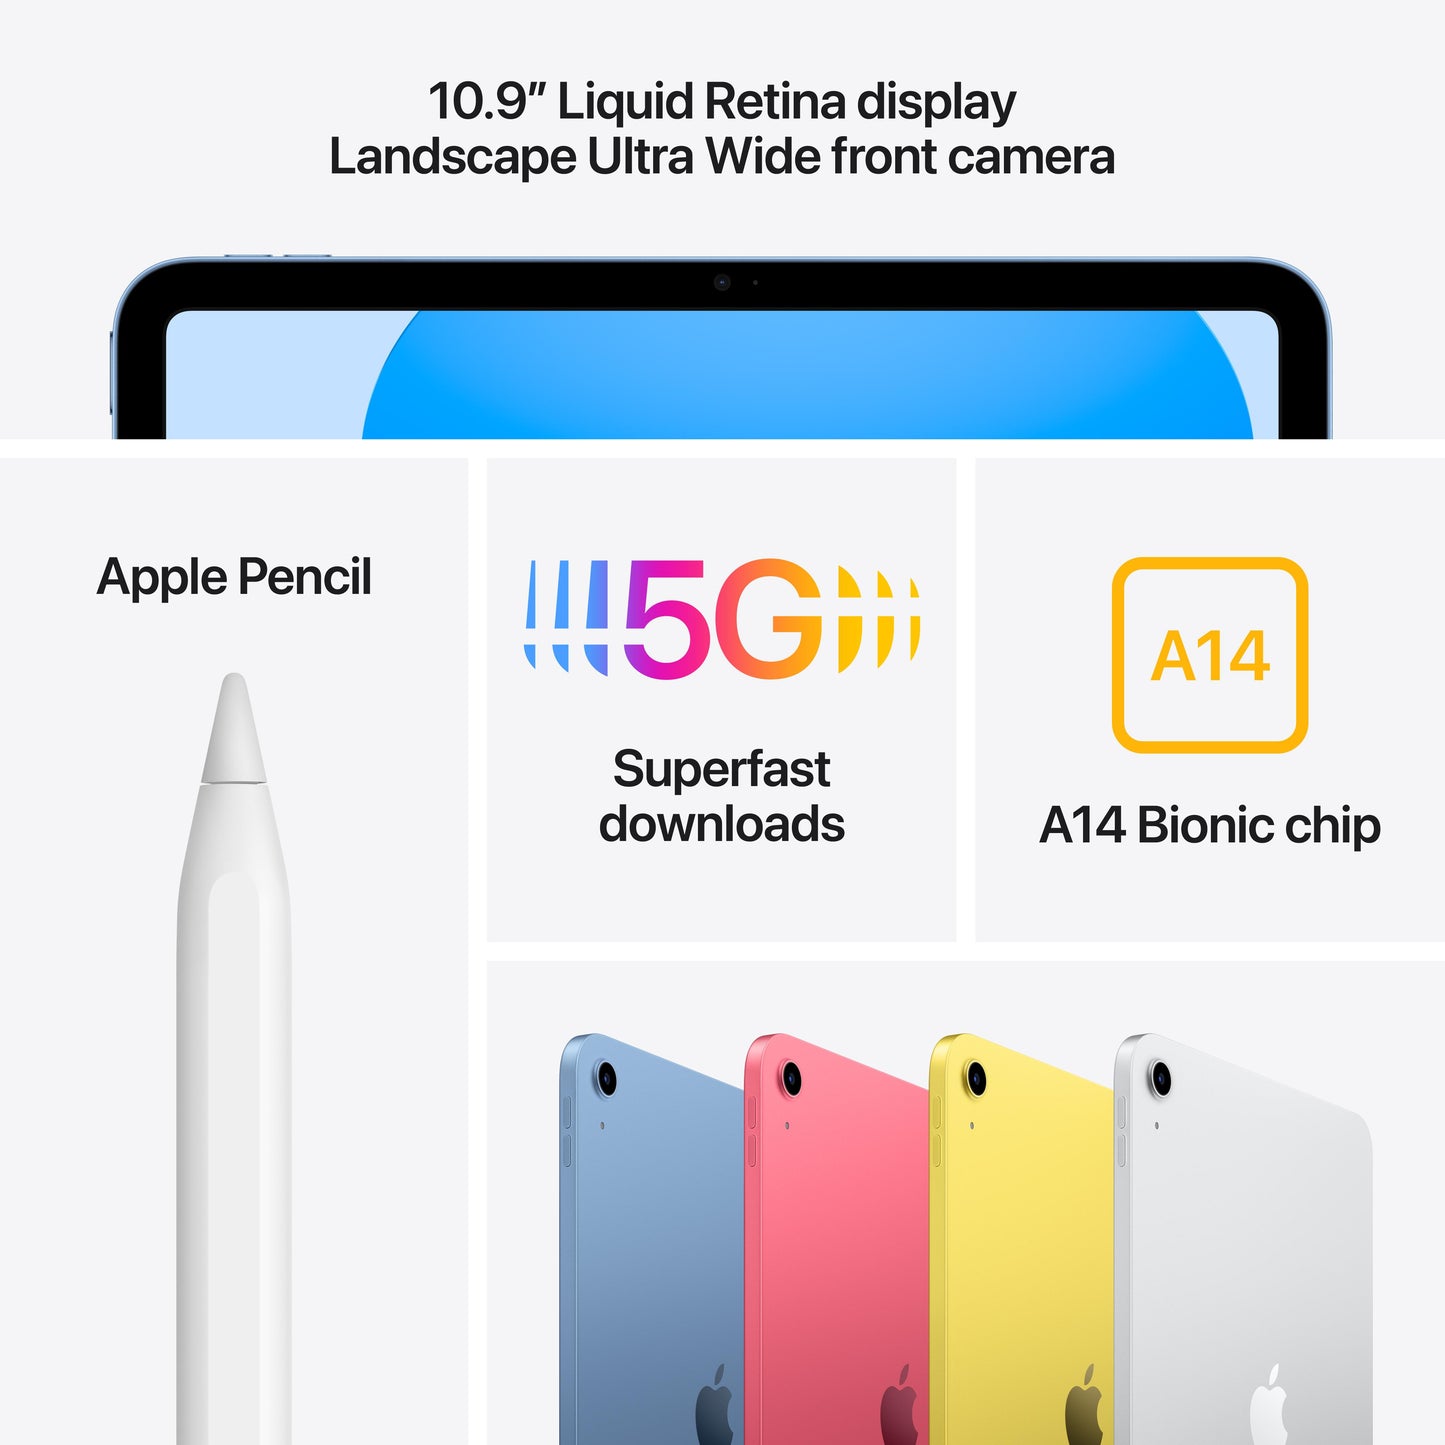 2022 10.9-inch iPad Wi-Fi + Cellular 64GB - Blue (10th generation)